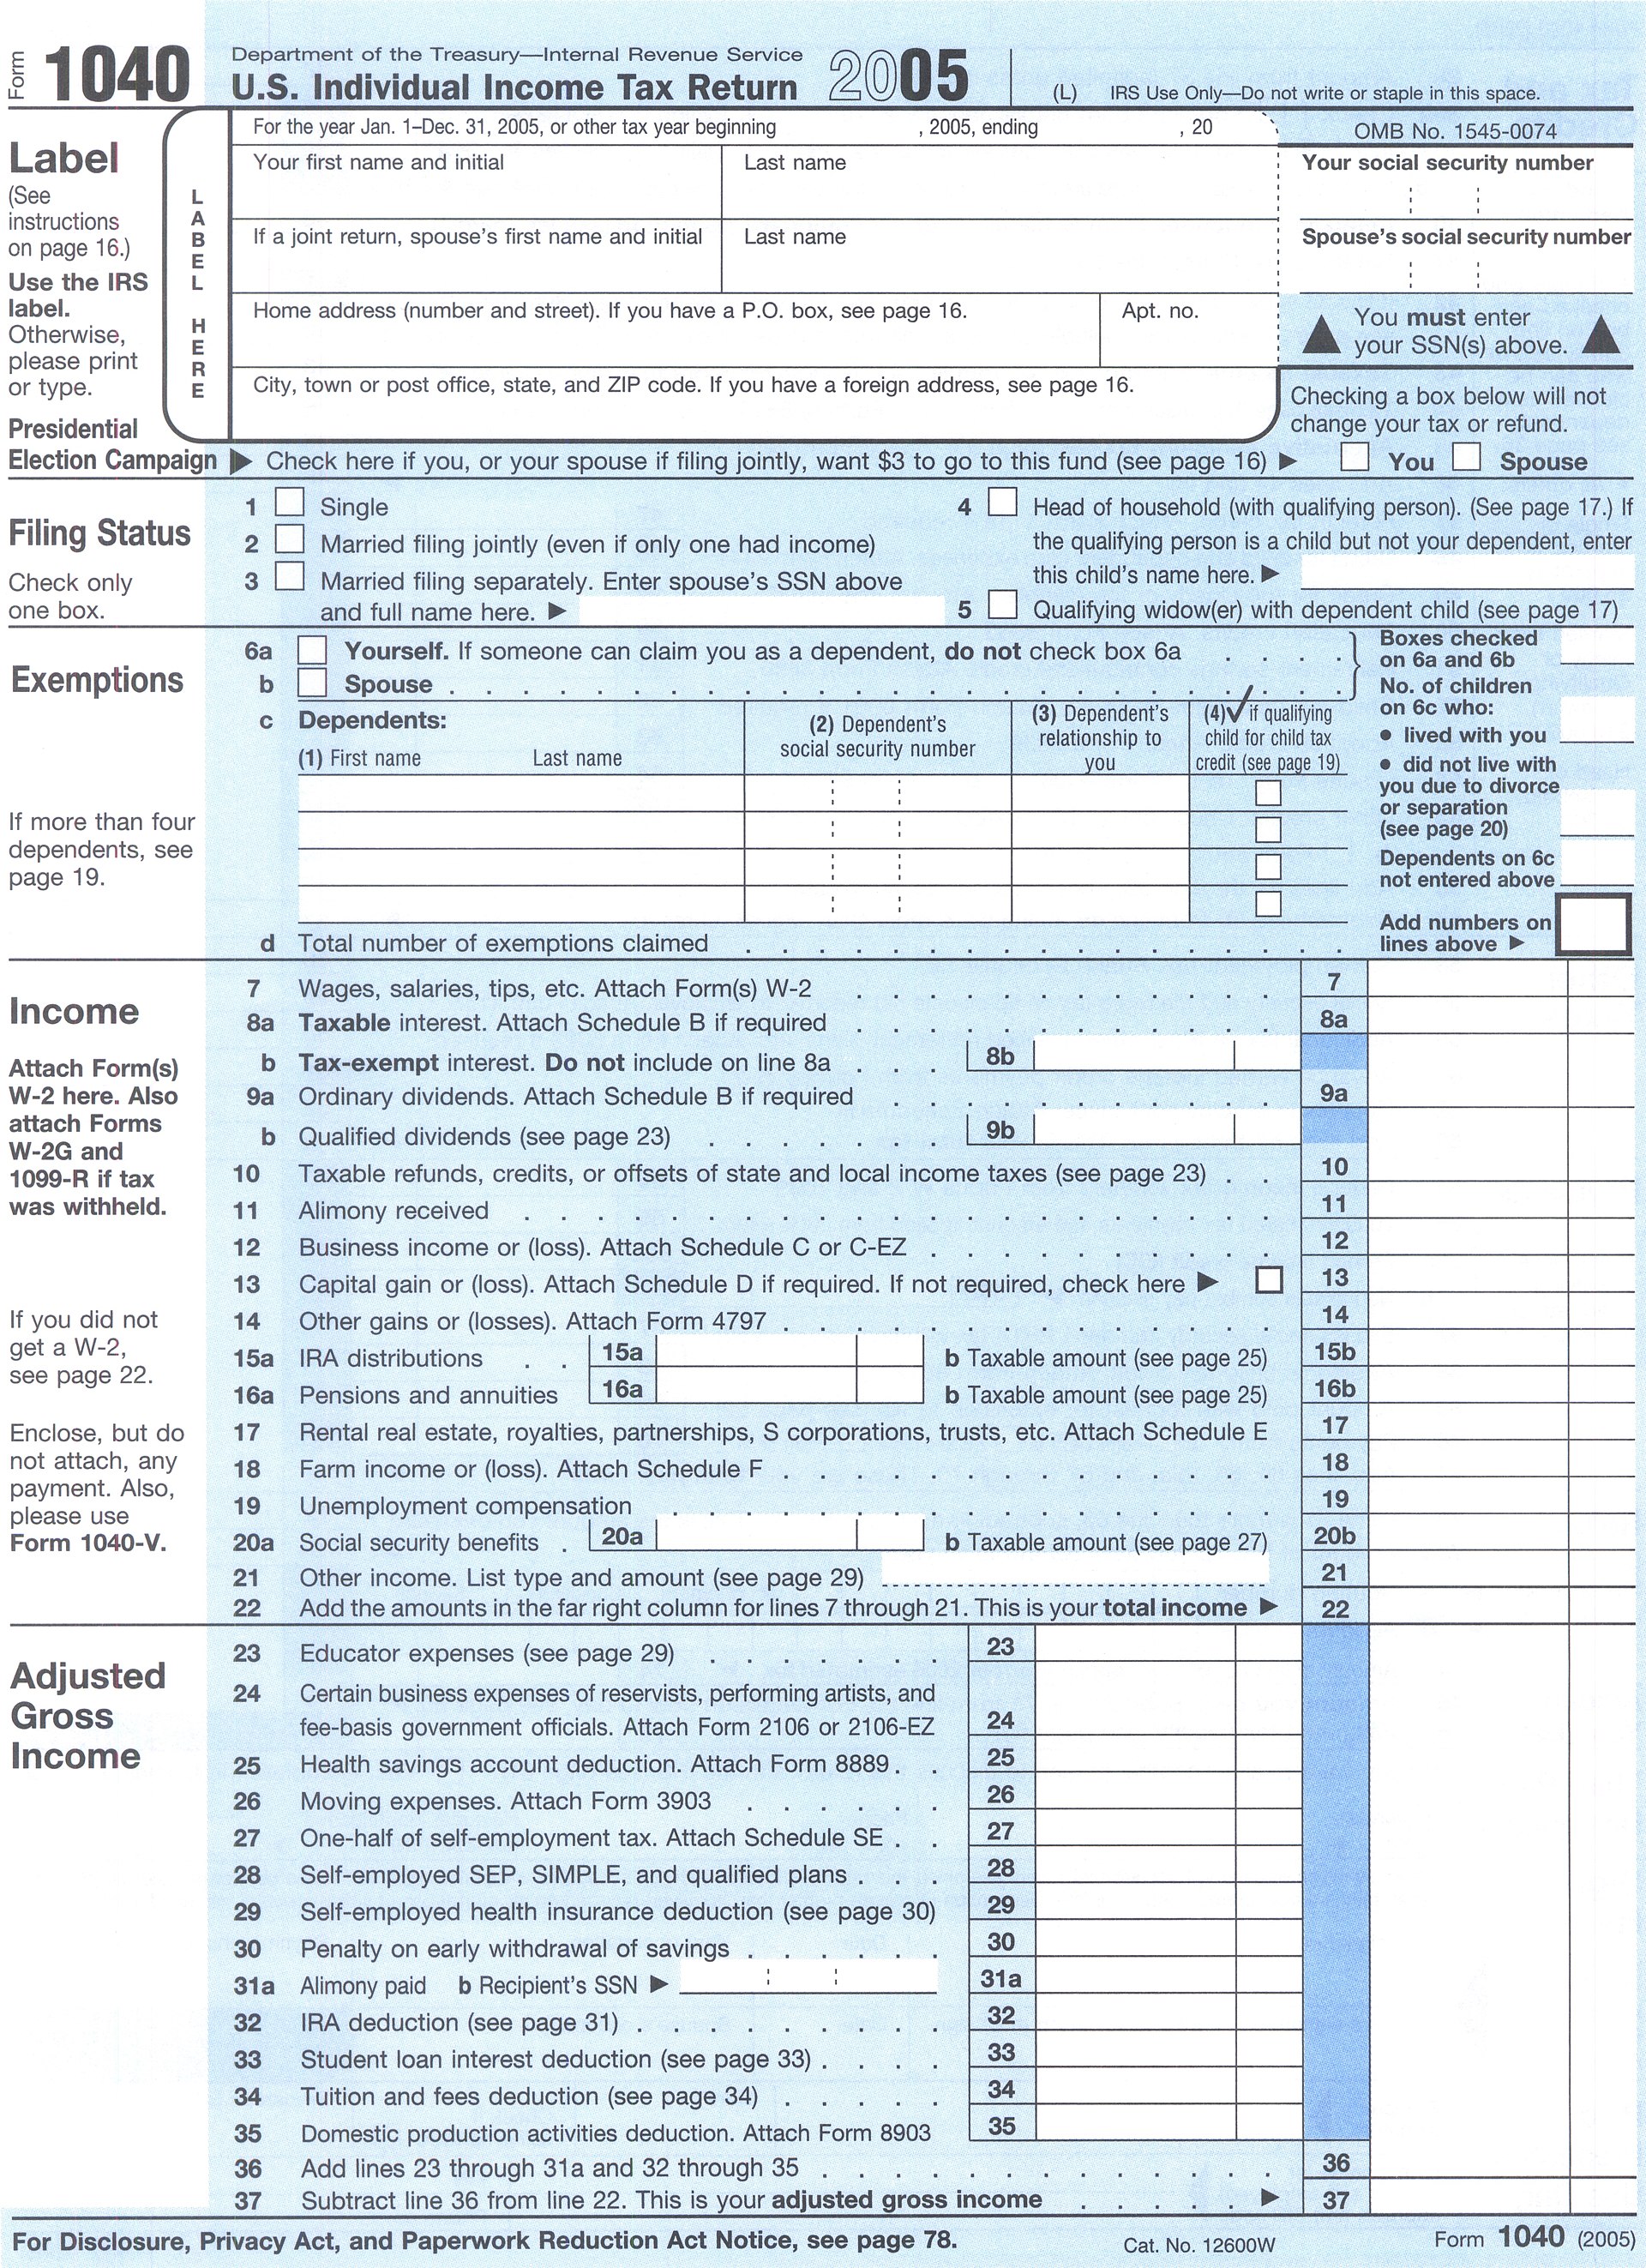 IRS tax forms - Wikipedia